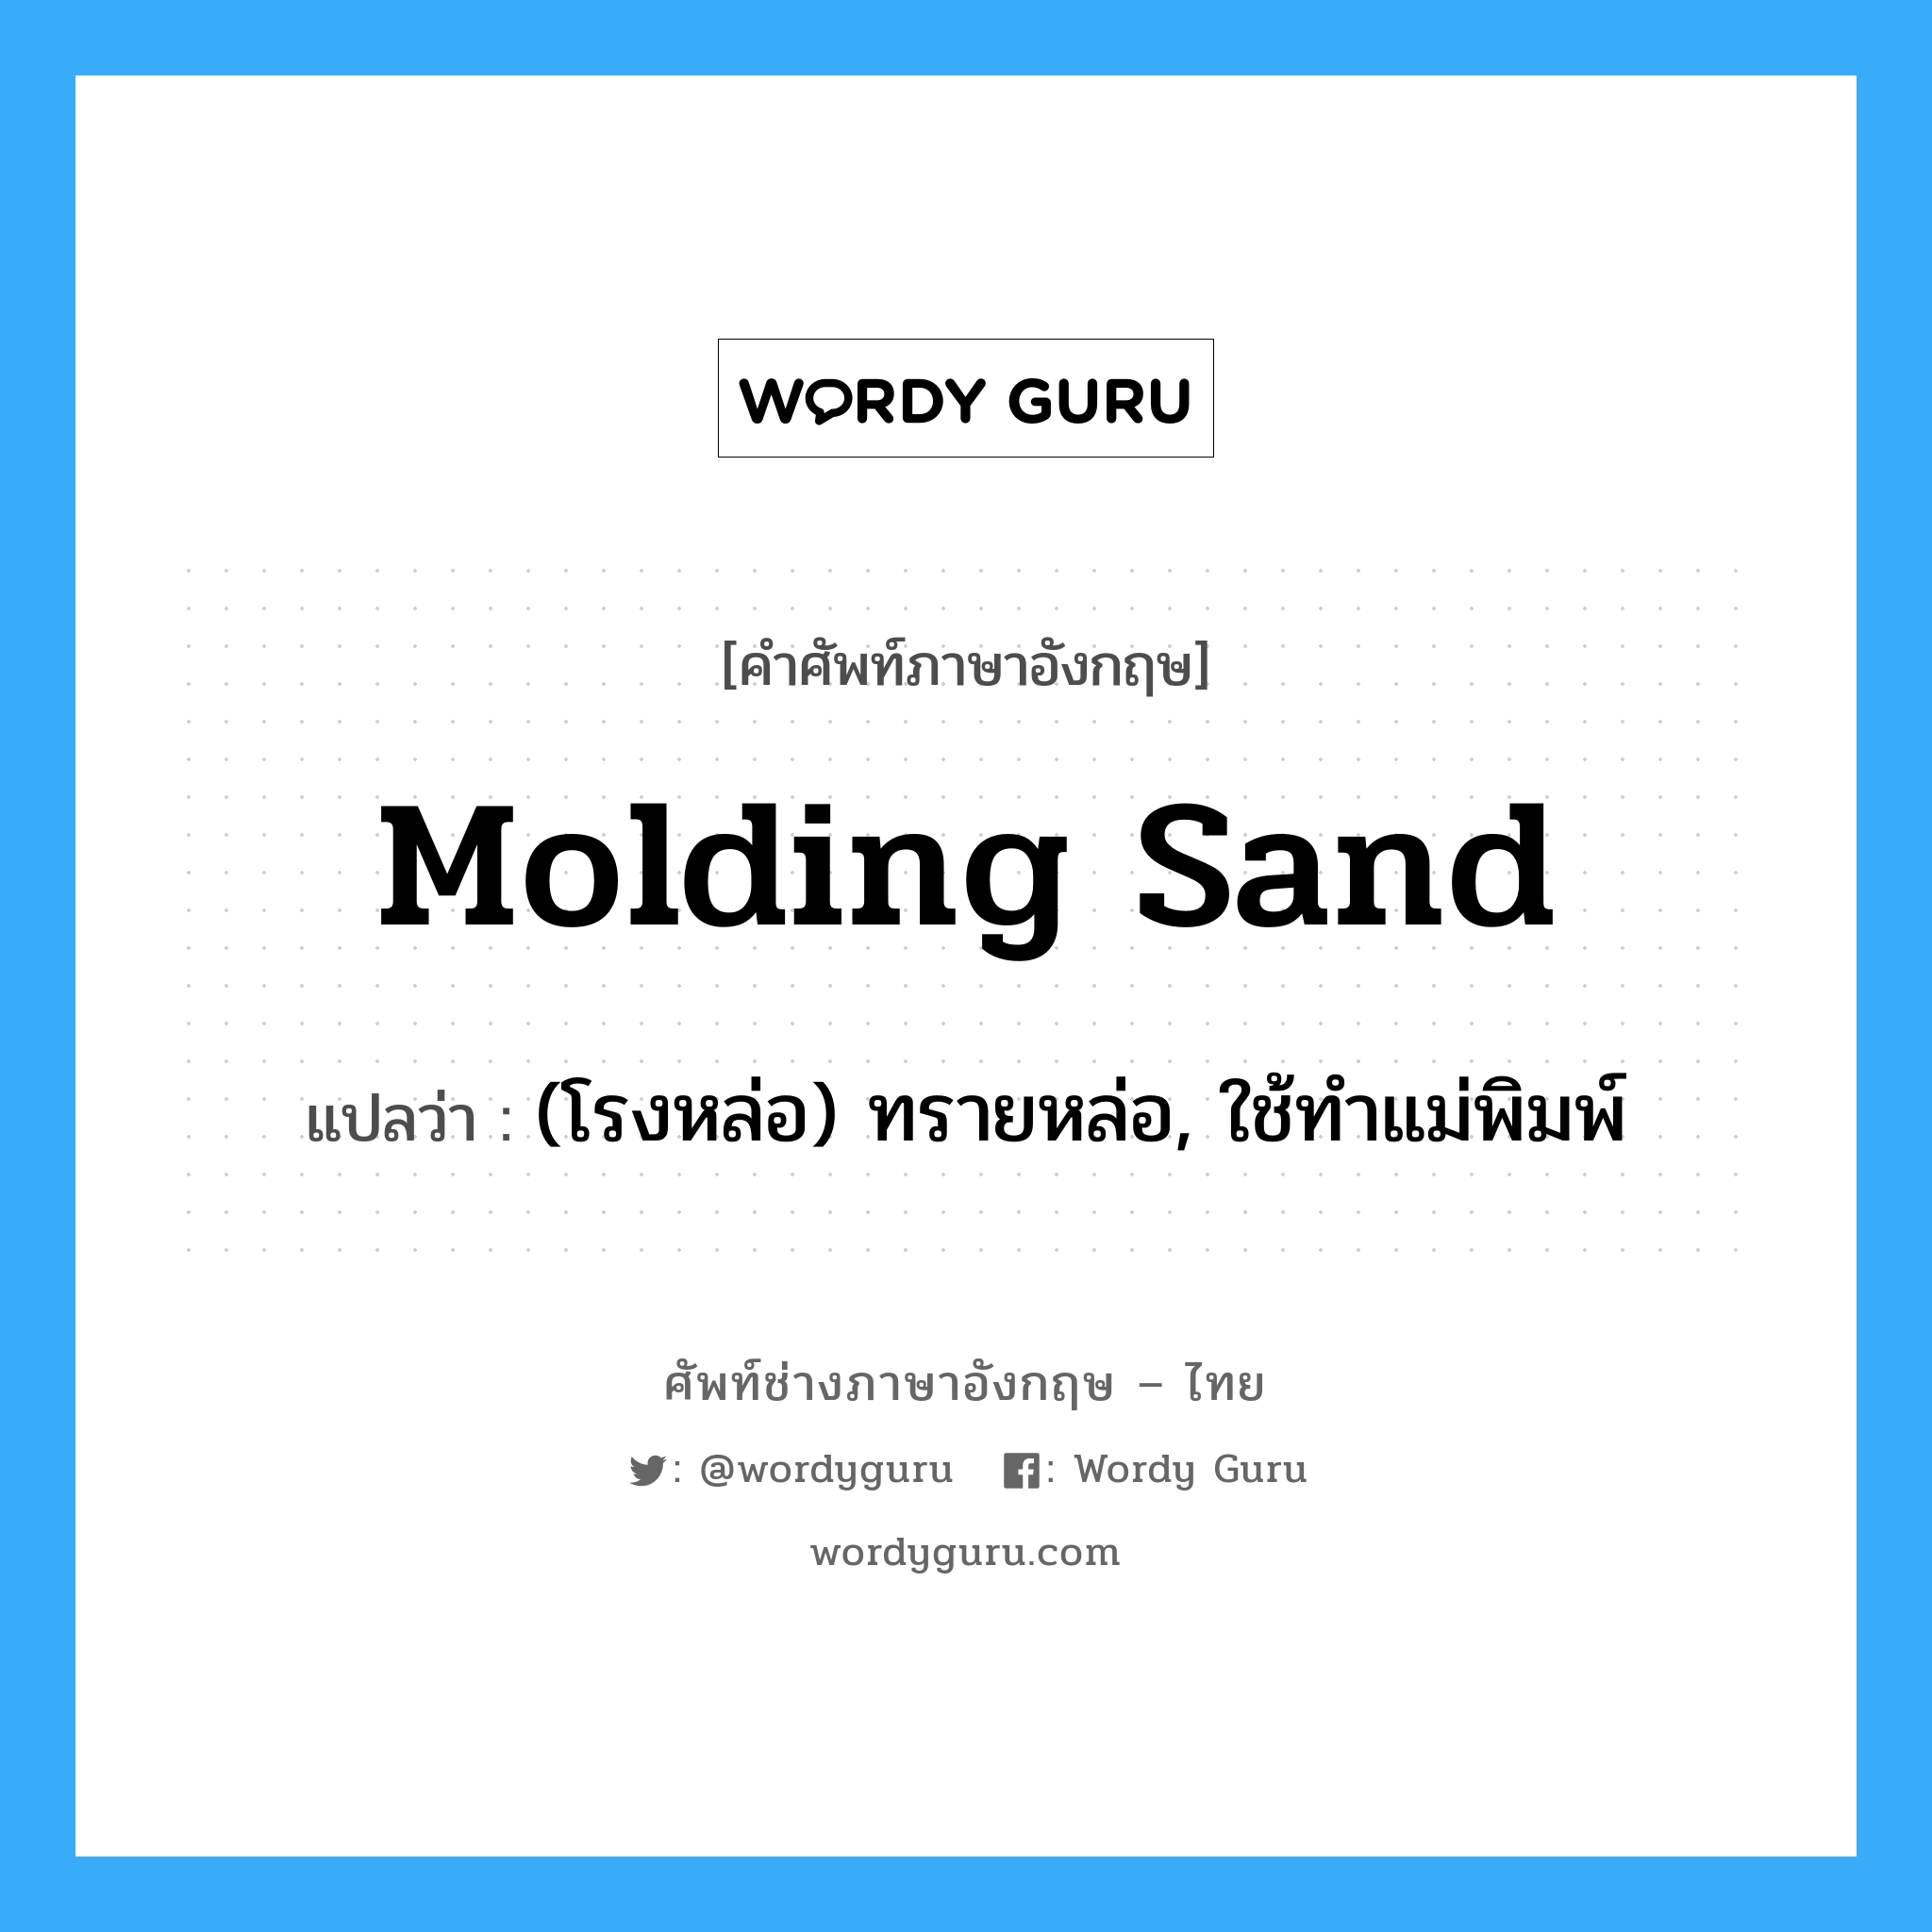 molding sand แปลว่า?, คำศัพท์ช่างภาษาอังกฤษ - ไทย molding sand คำศัพท์ภาษาอังกฤษ molding sand แปลว่า (โรงหล่อ) ทรายหล่อ, ใช้ทำแม่พิมพ์